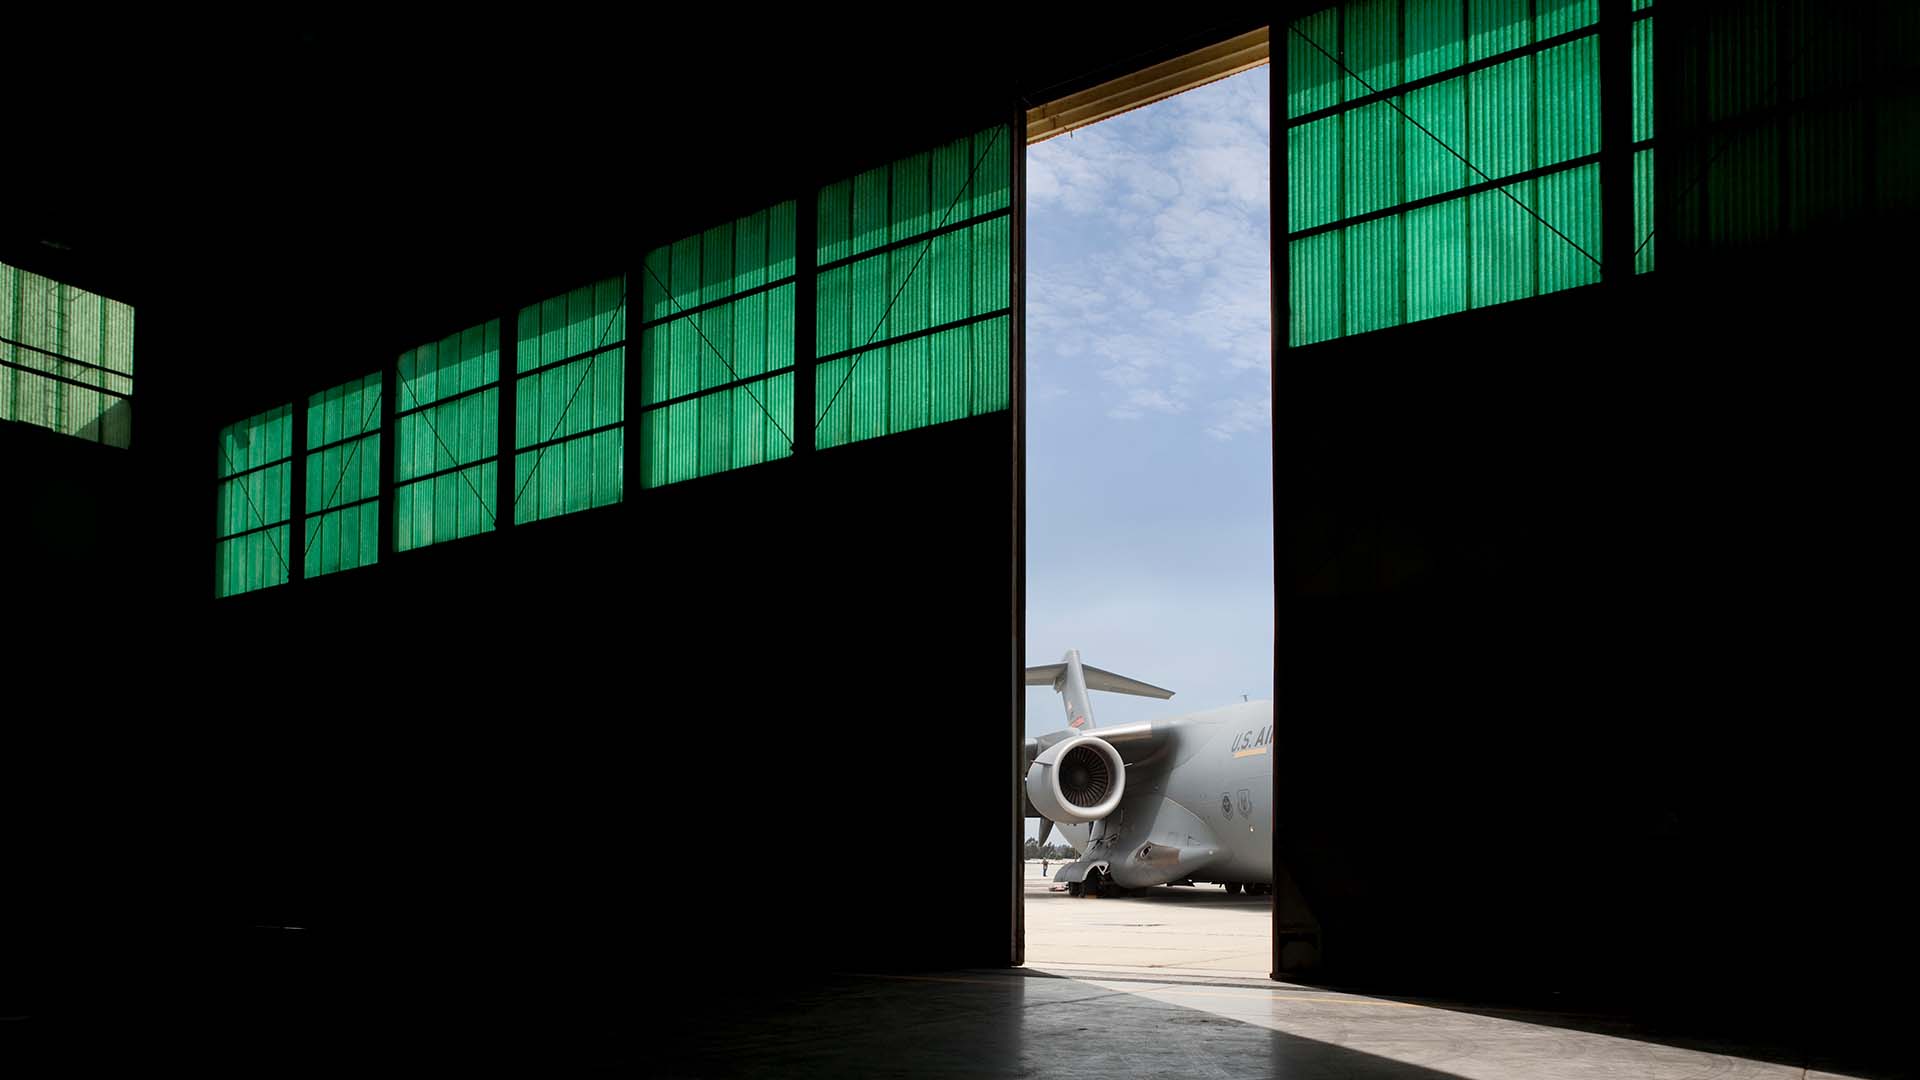 Military C10 transport hangar